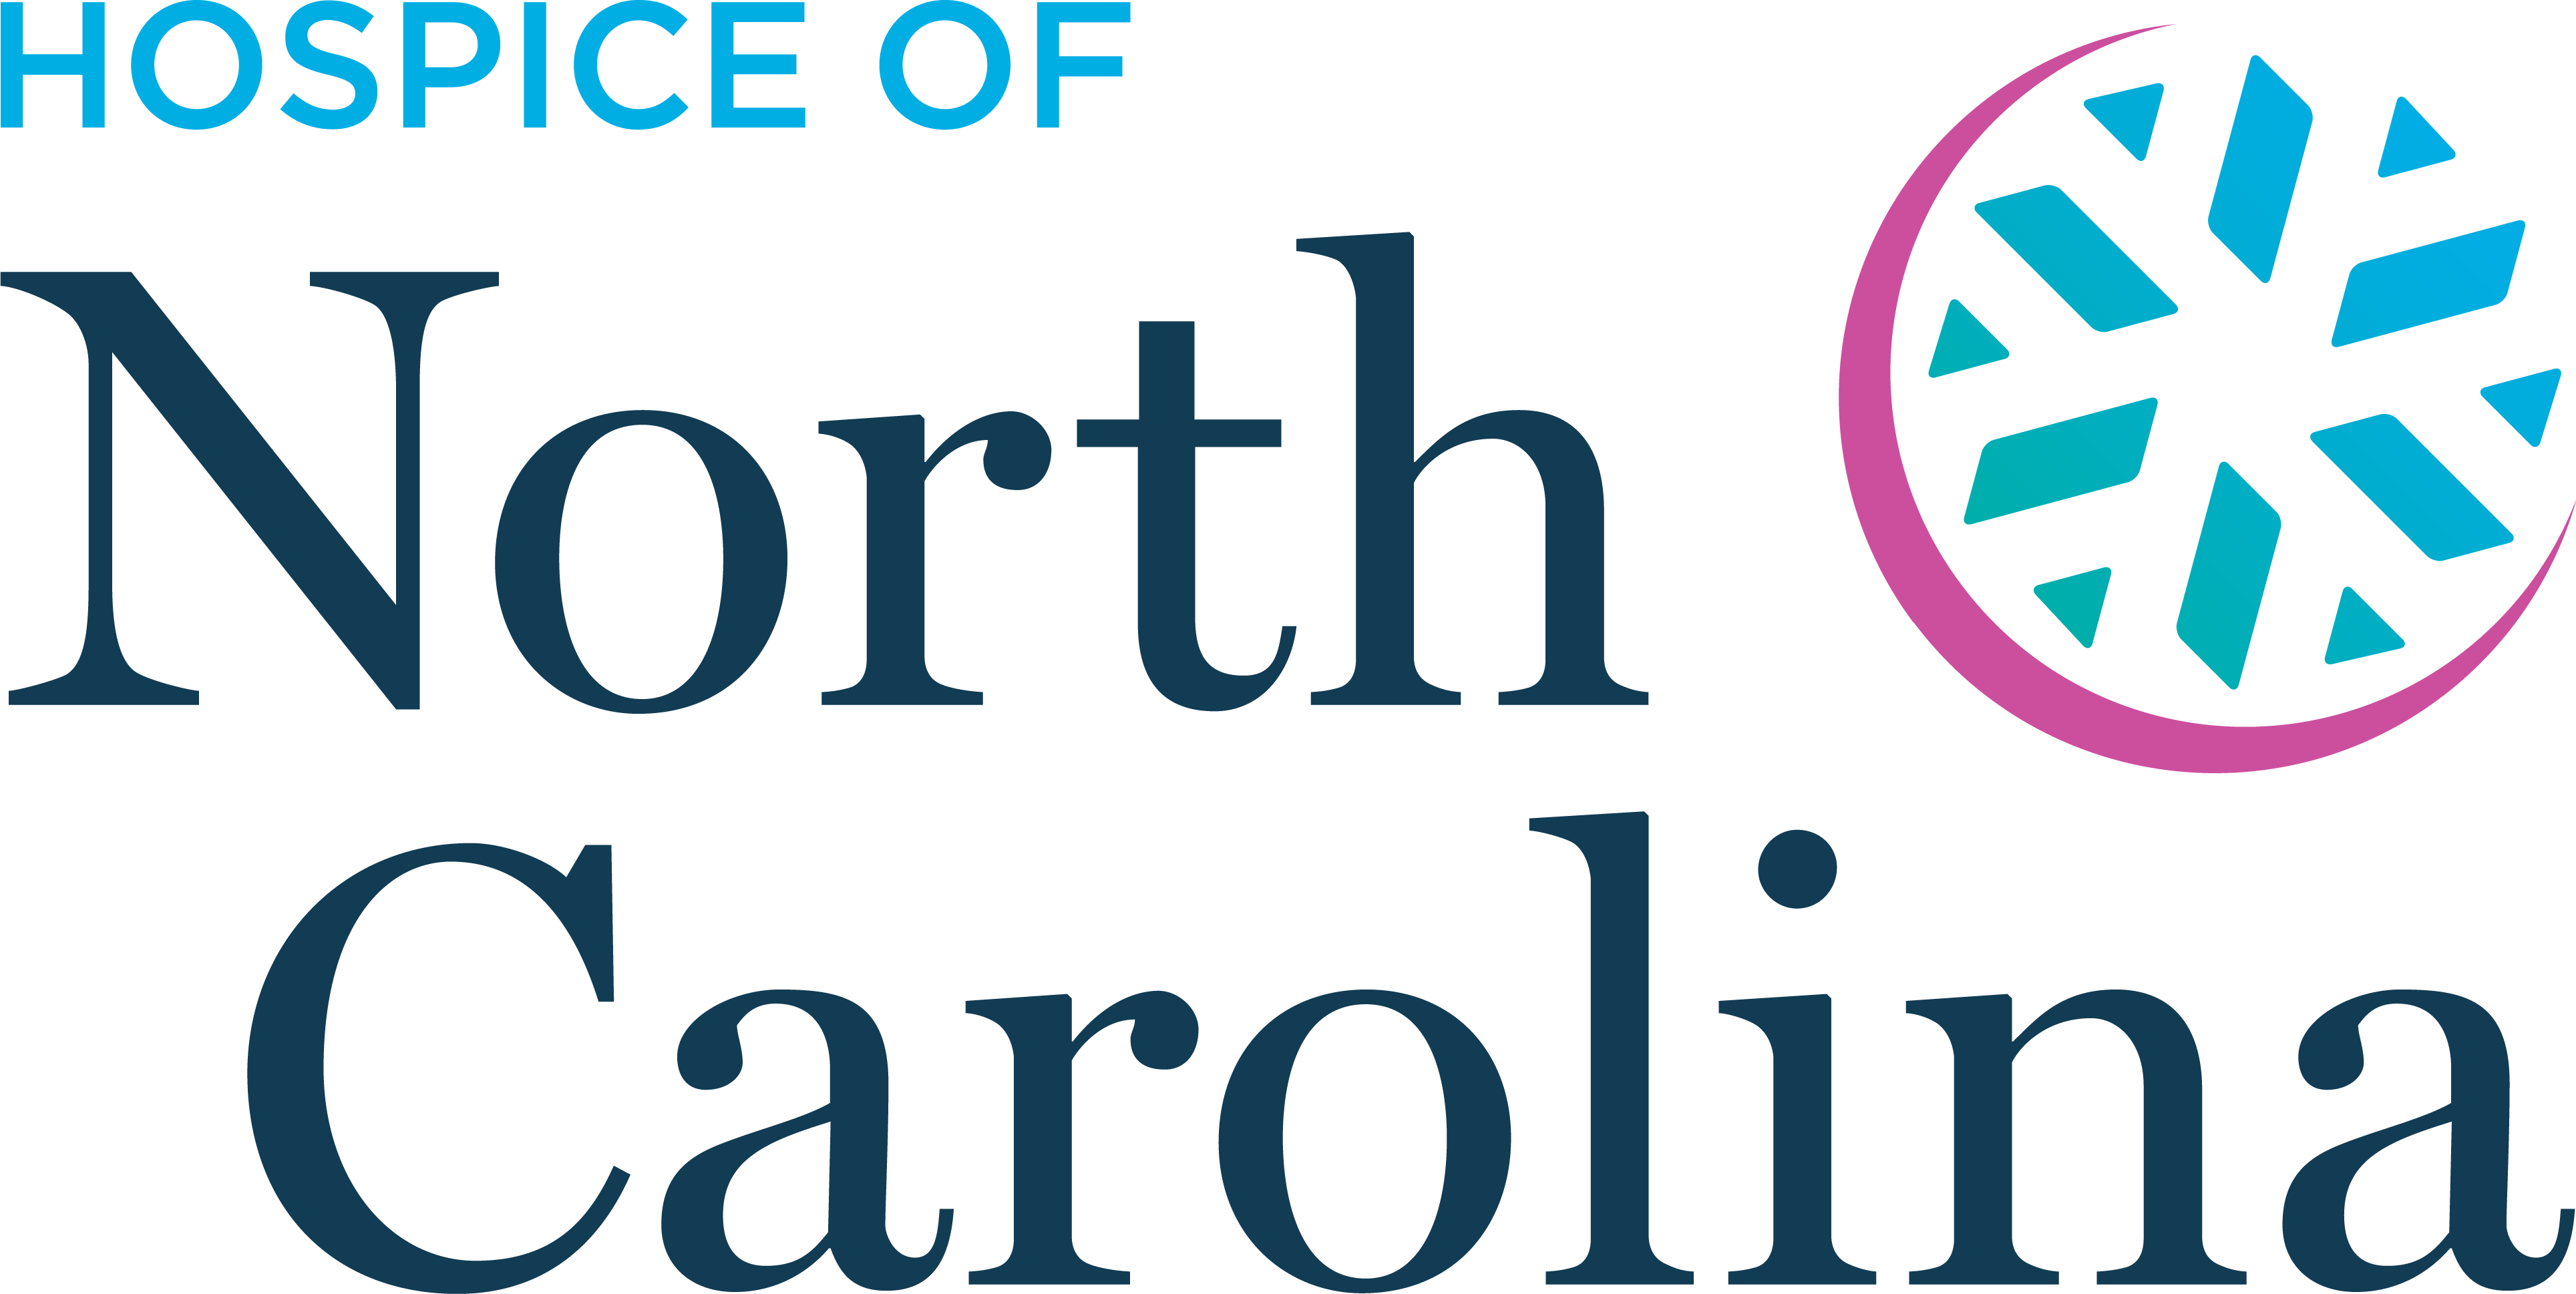 Hospice of North Carolina Logo